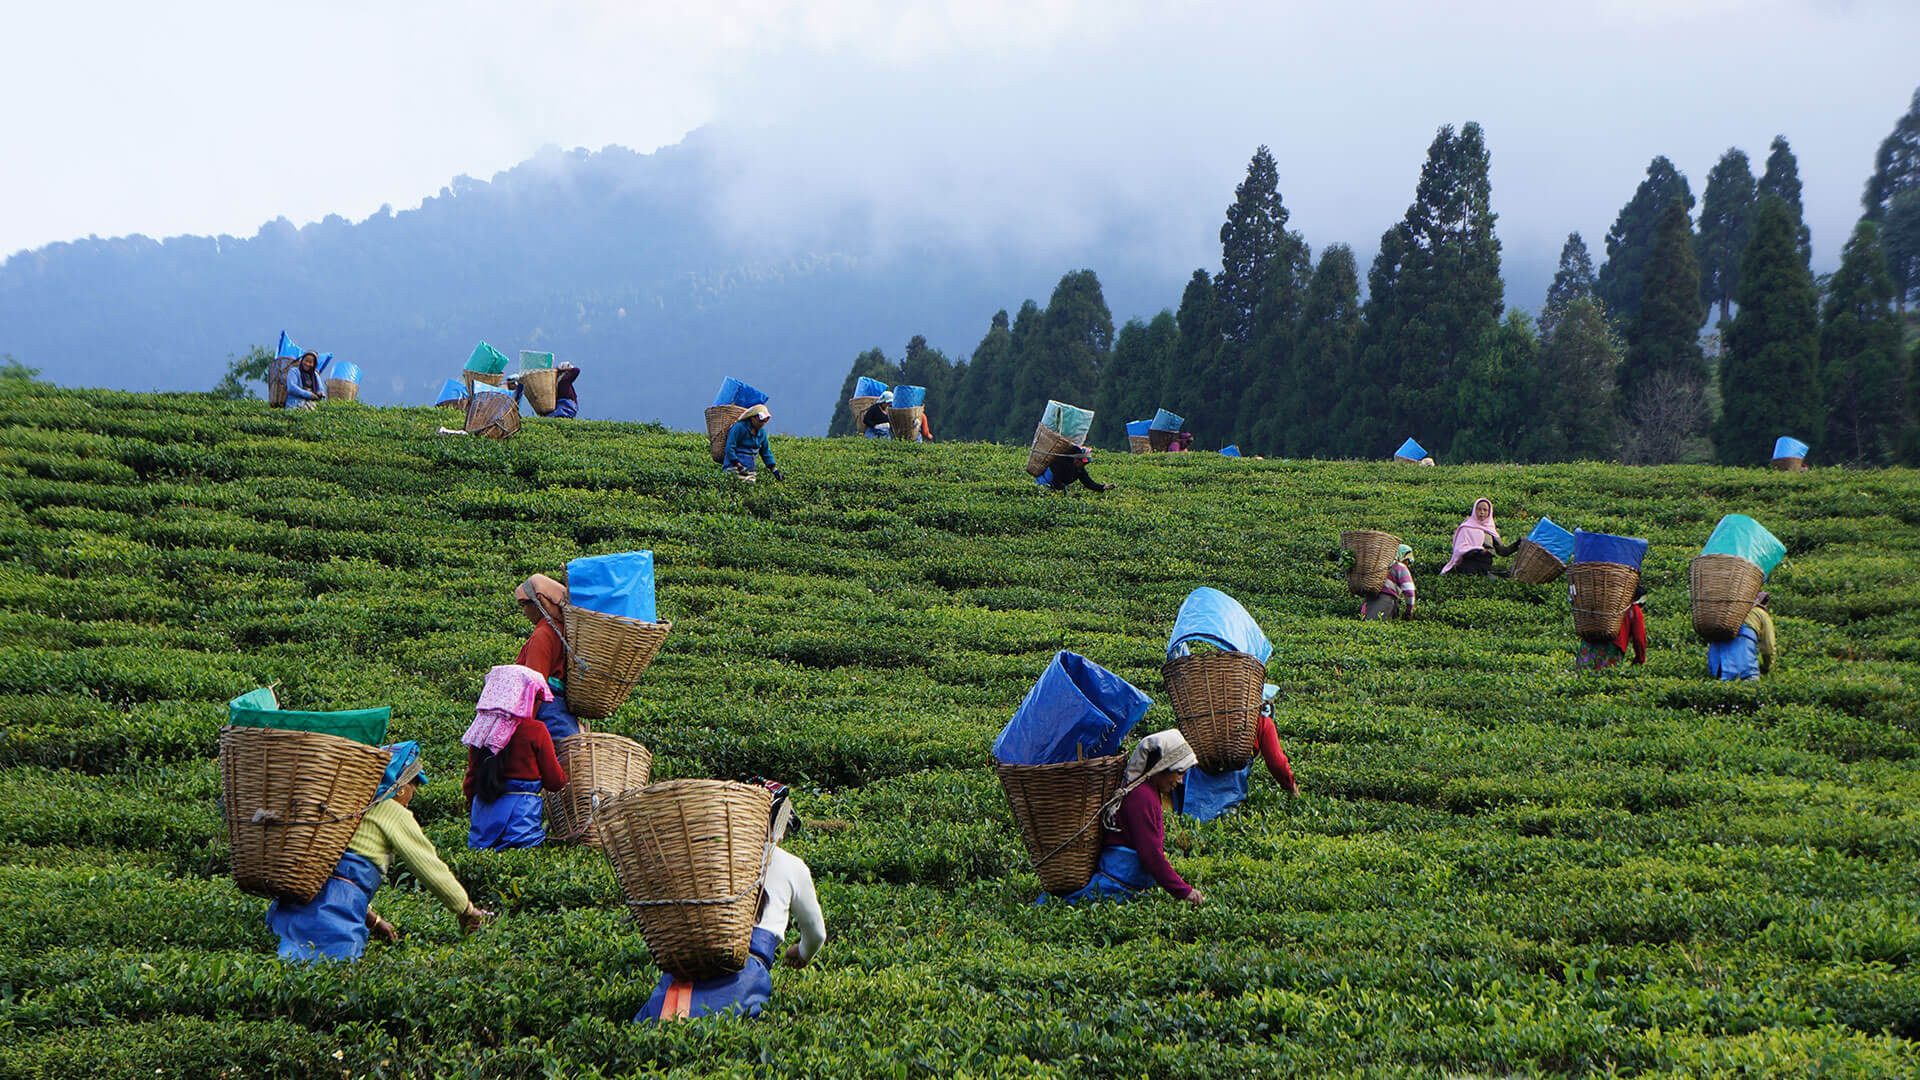 Tea Festival is the harvest festival in Assam